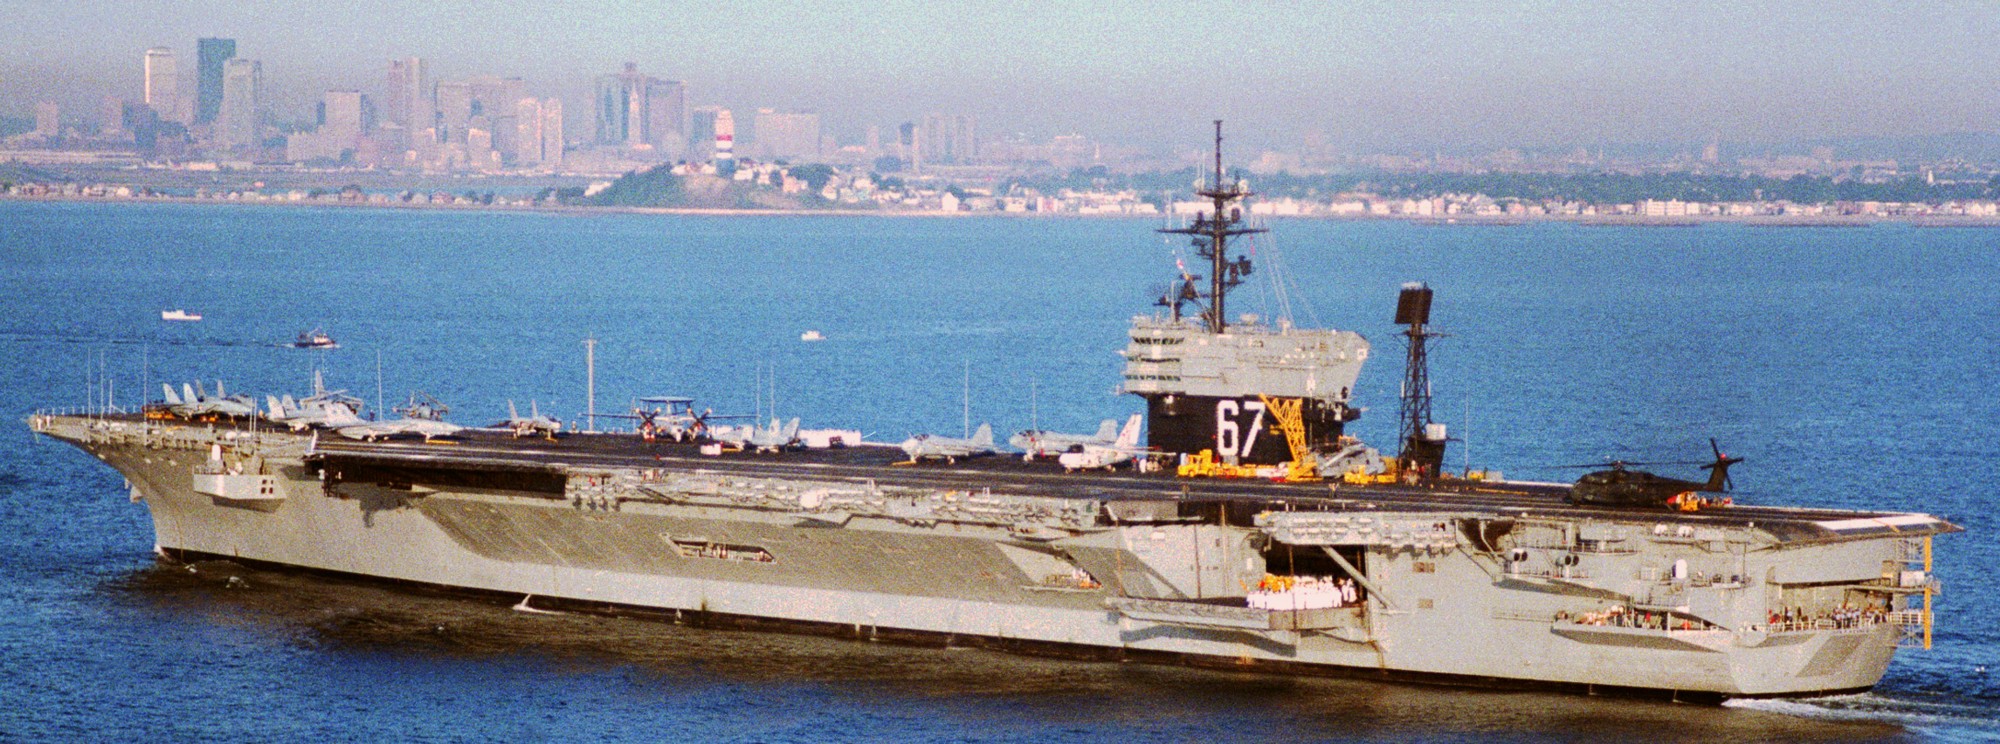 cv-67 uss john f. kennedy aircraft carrier us navy 105